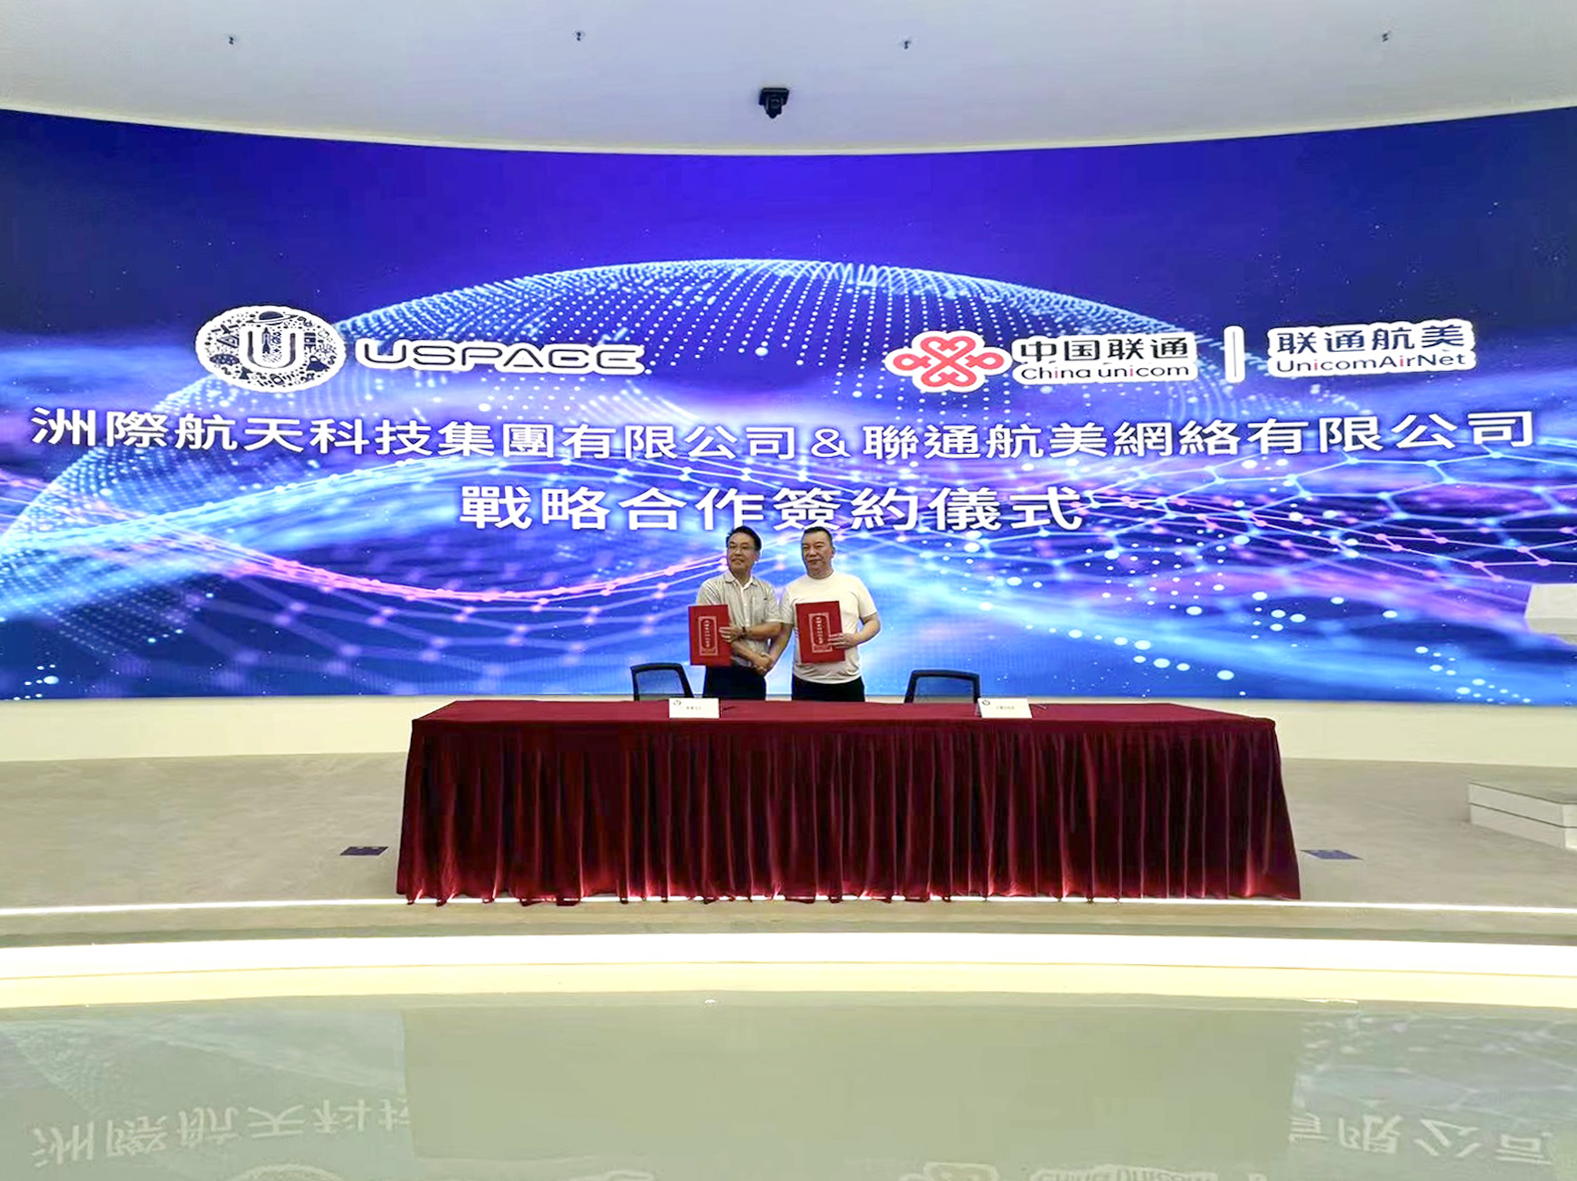 洲際航天科技與中國聯通航美簽署戰略合作協議